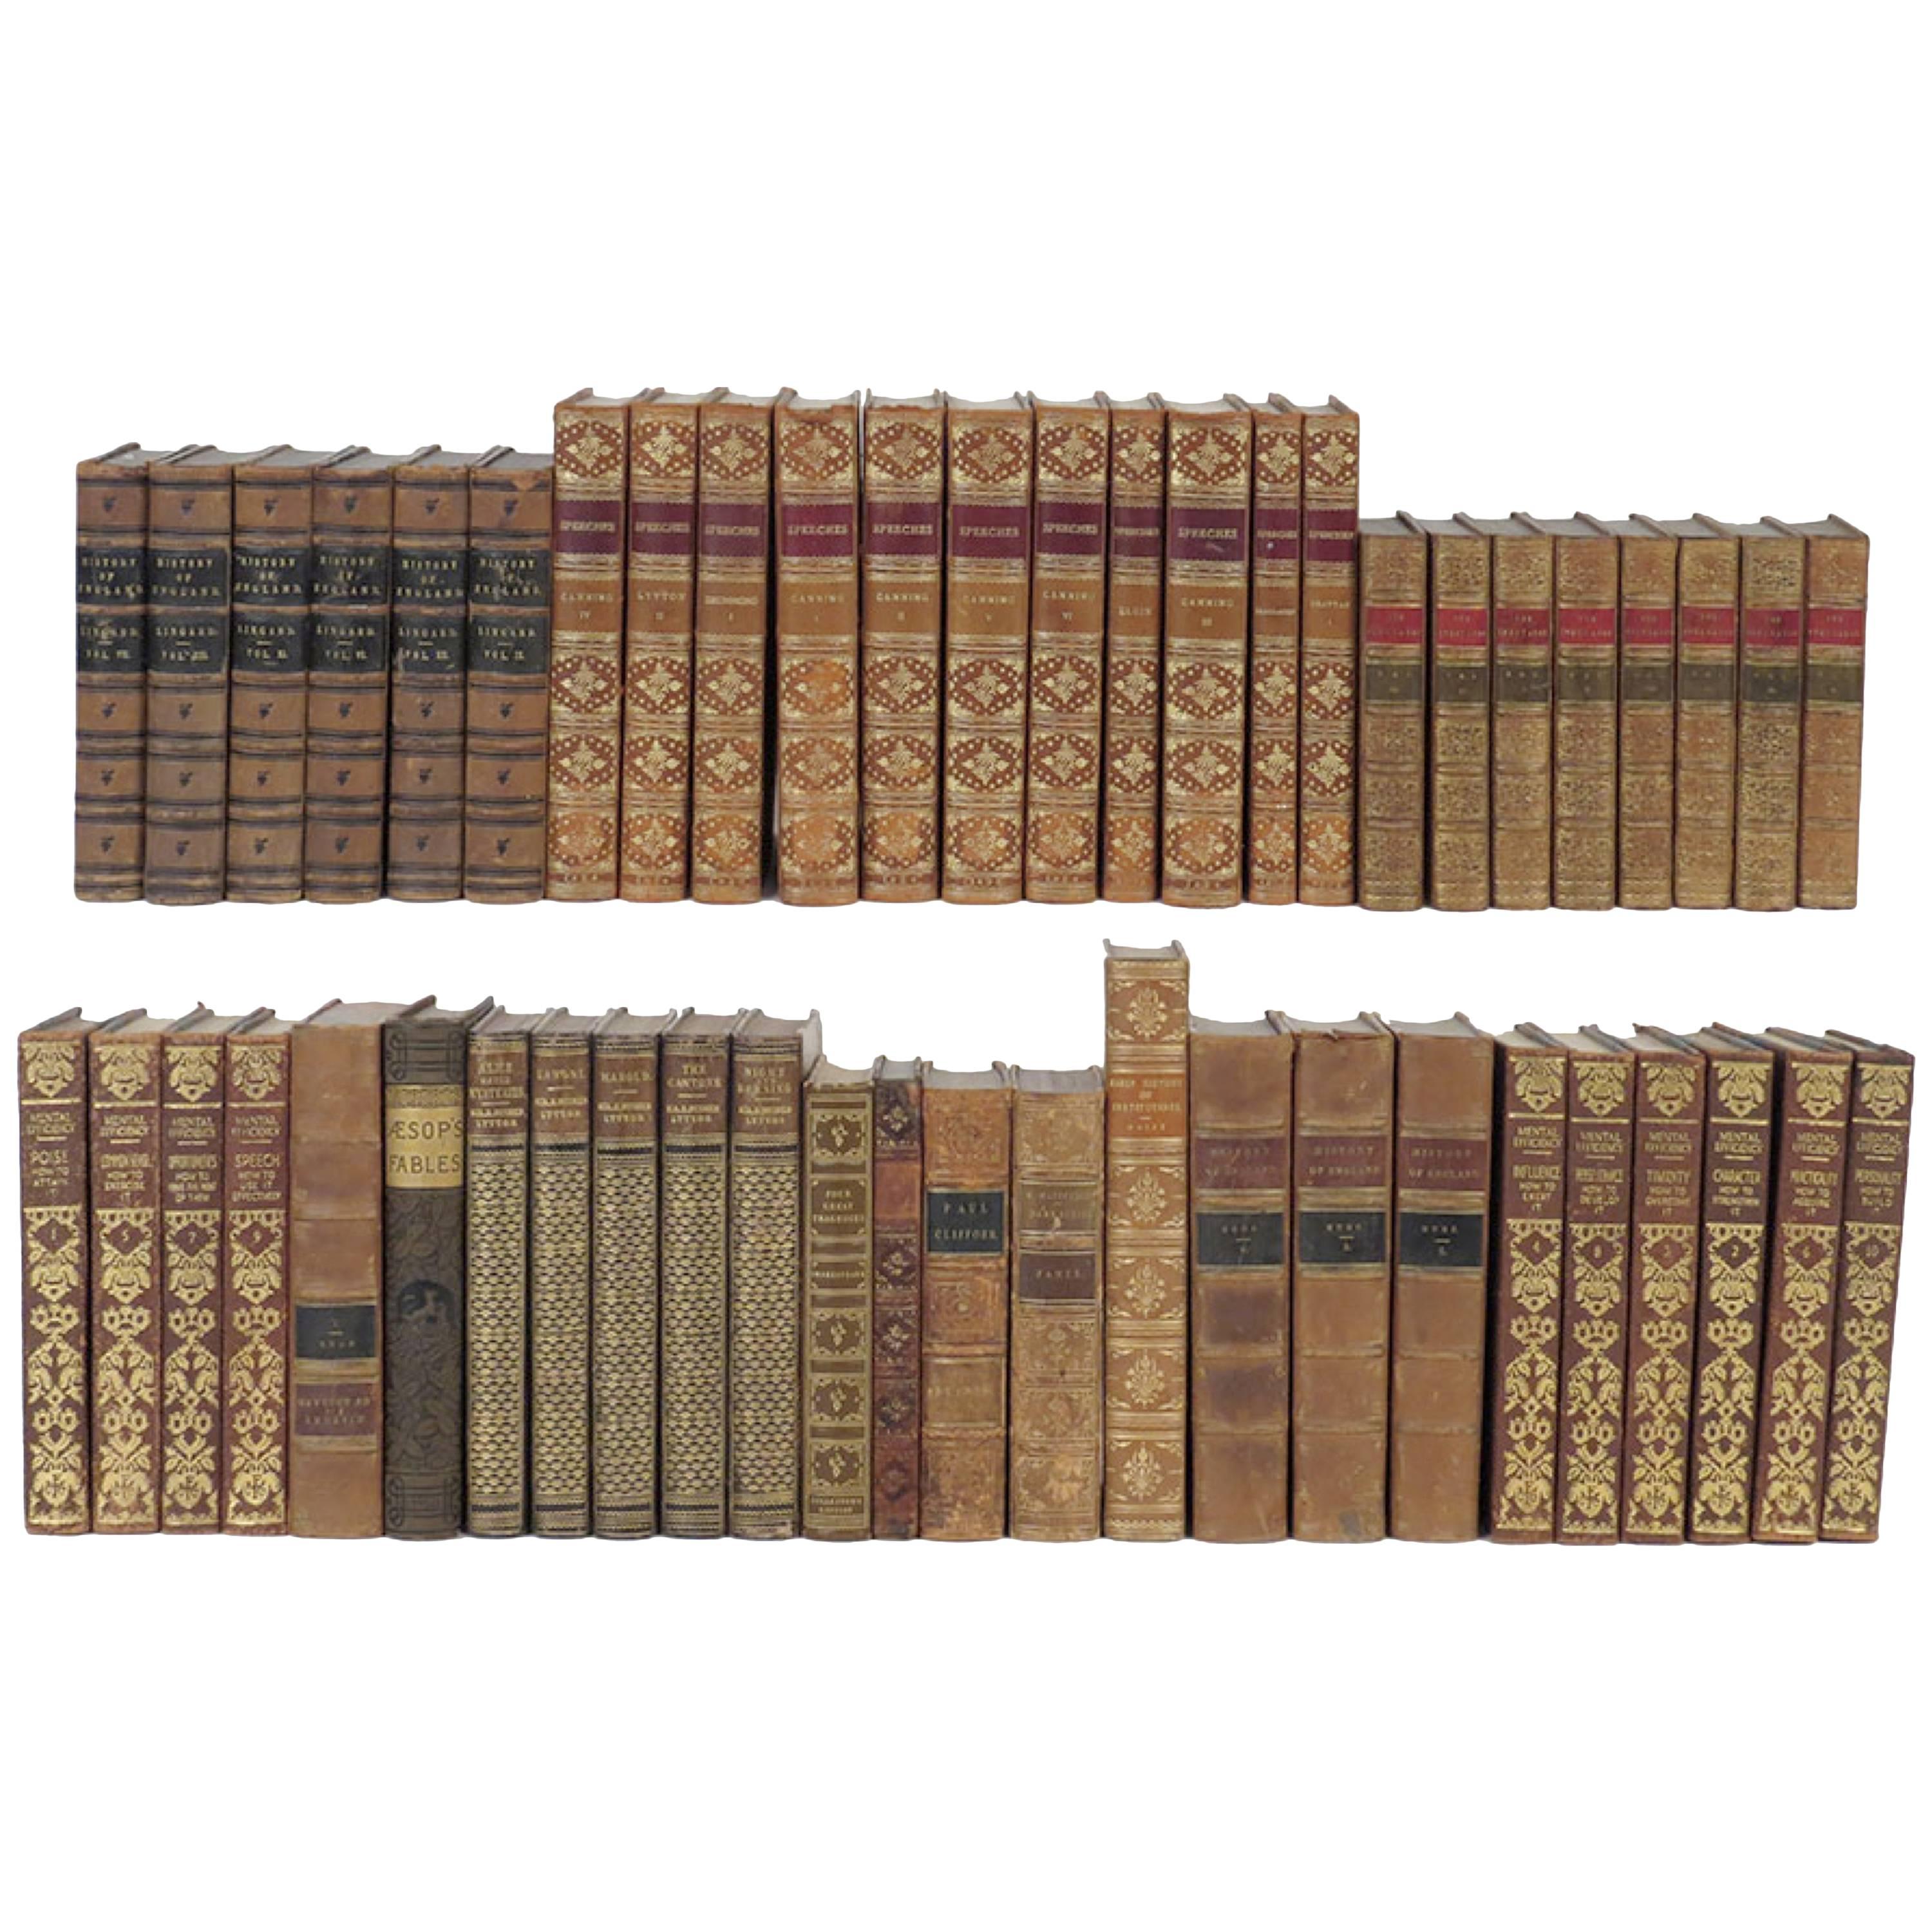 Nouvelle livraison de livres assortis reliés en cuir:: prix par livre. Anglais